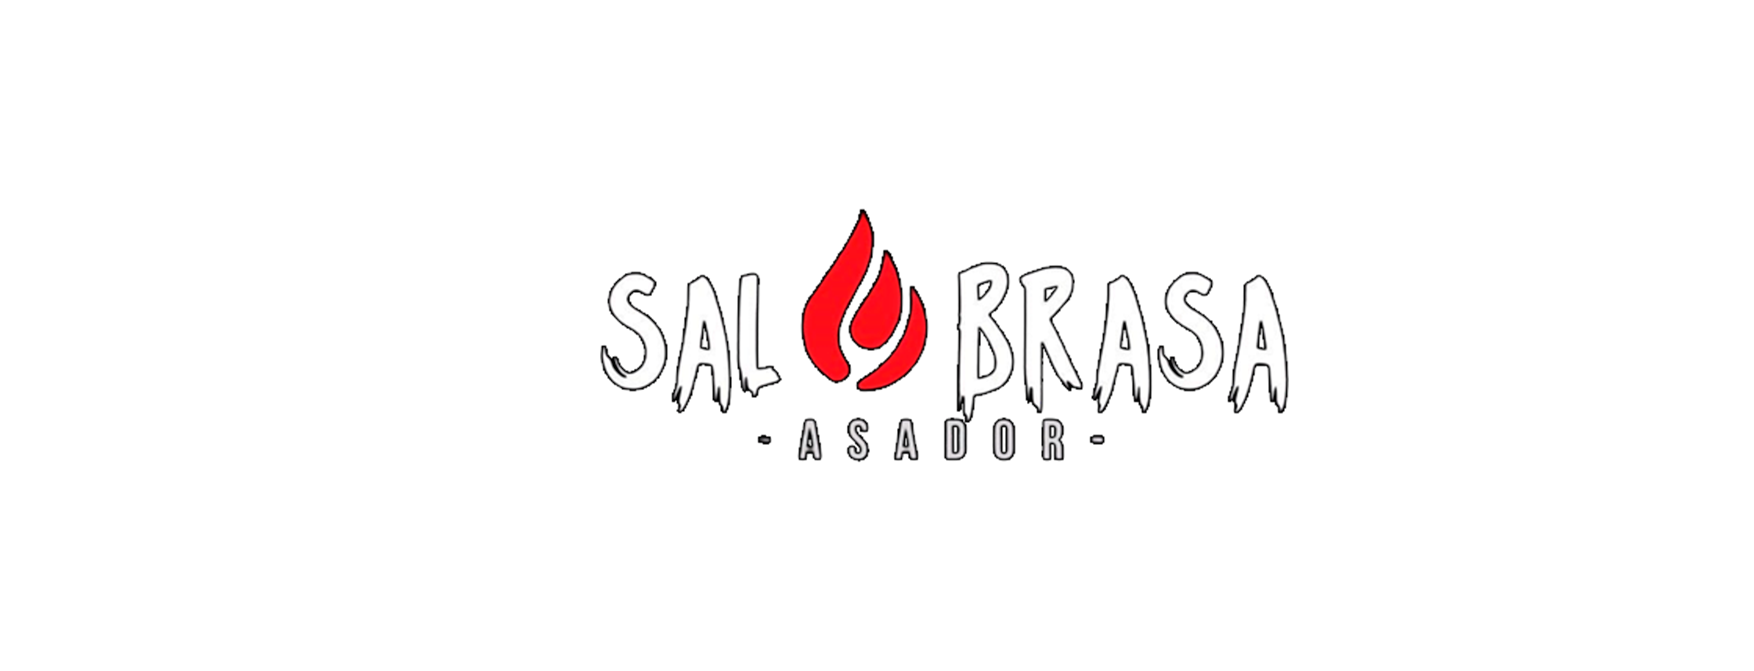 Asador Sal & Brasa